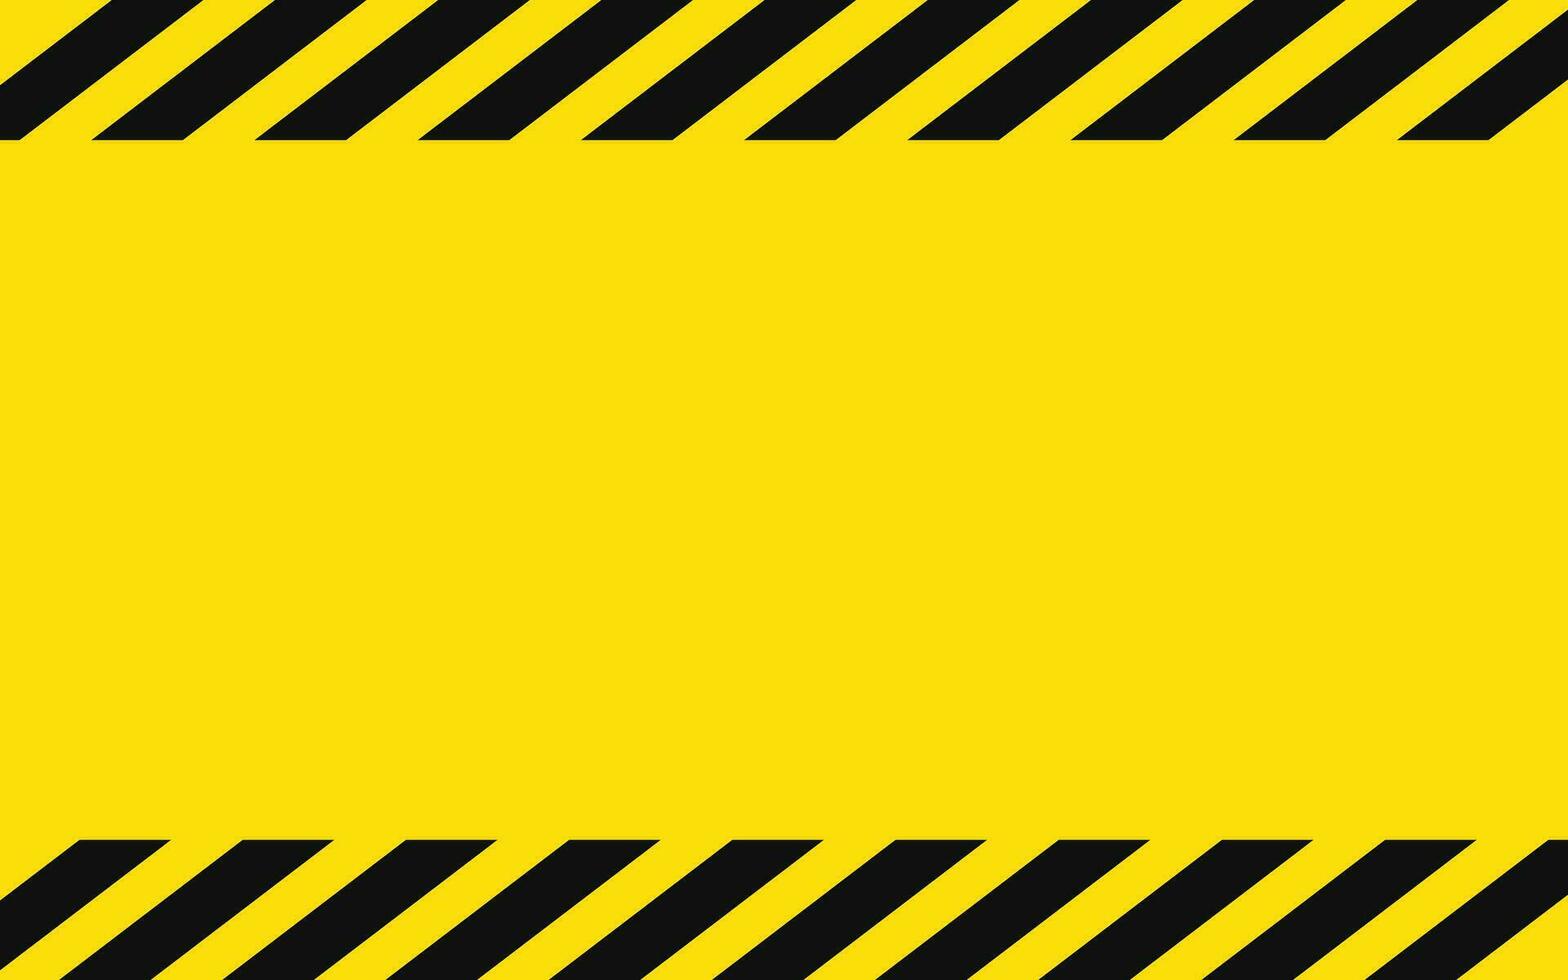 Gelb und schwarz Polizei Hintergrund zu warnen das Achtung Bereich. Vorsicht Band Hintergrund Warnung leer Illustration vektor